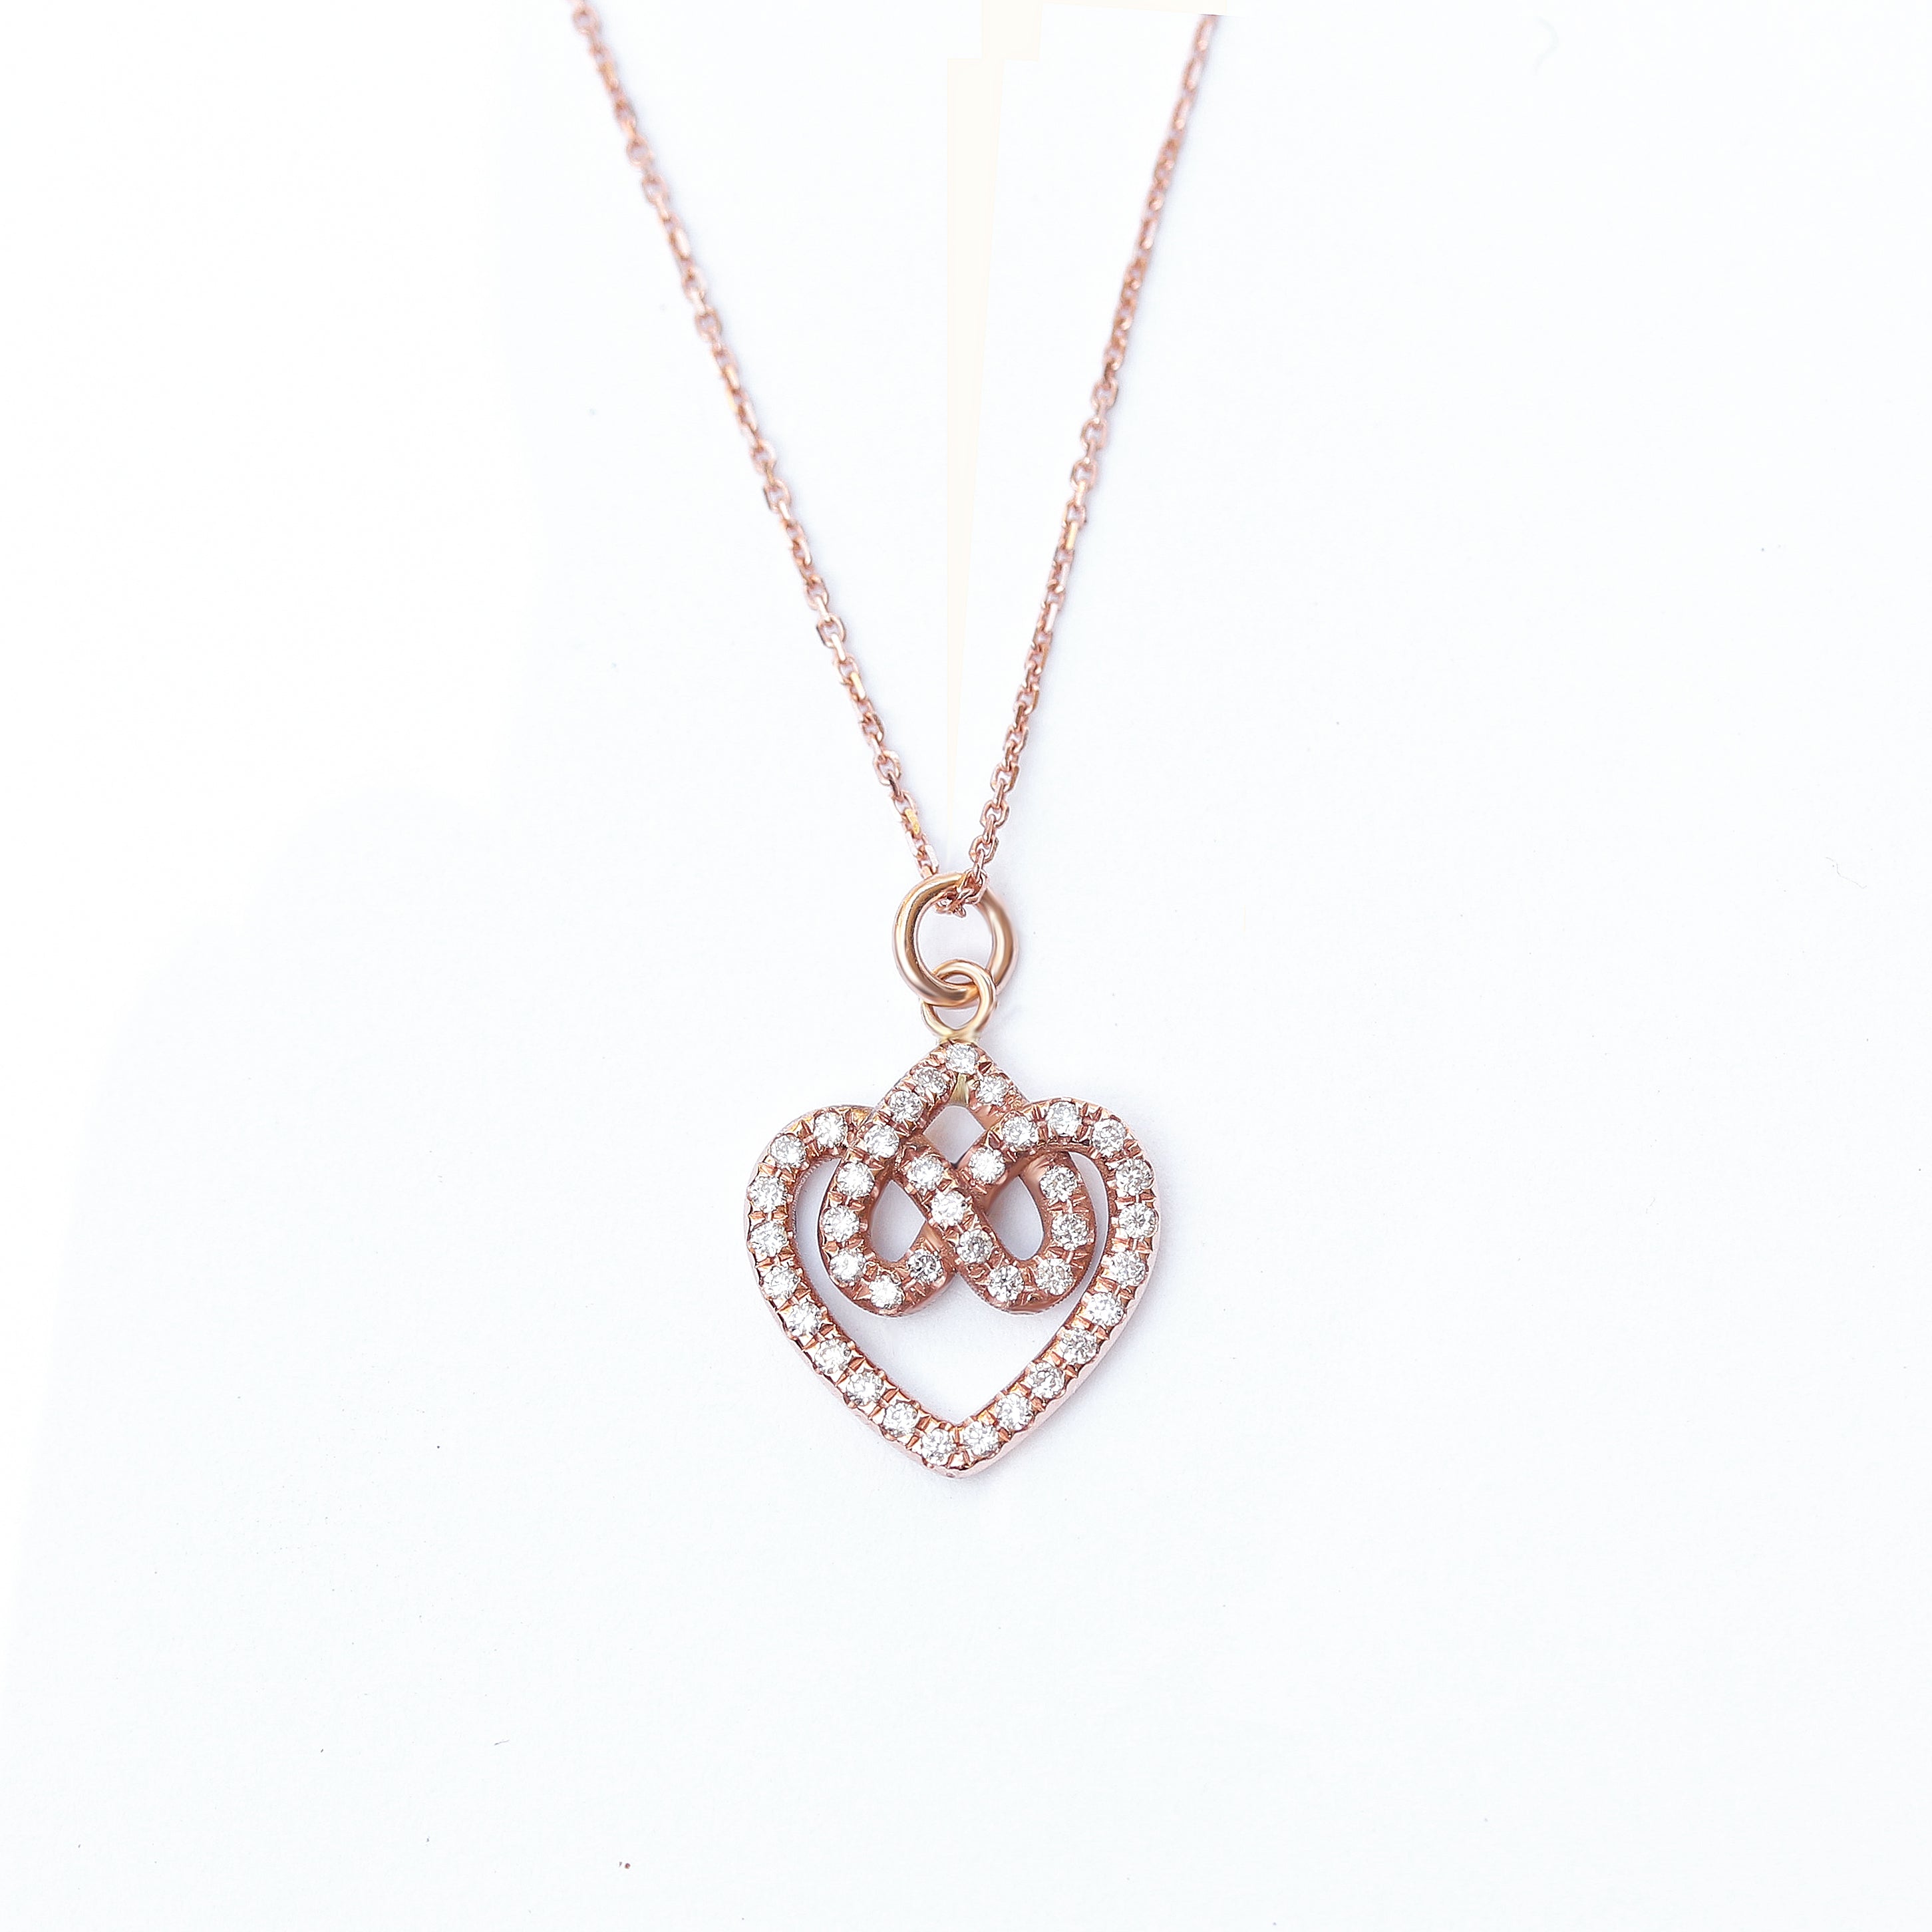 Infinity hearts lock knot diamond pendant necklace, 14K rose gold, 42 cm, ready to ship - sillyshinydiamonds